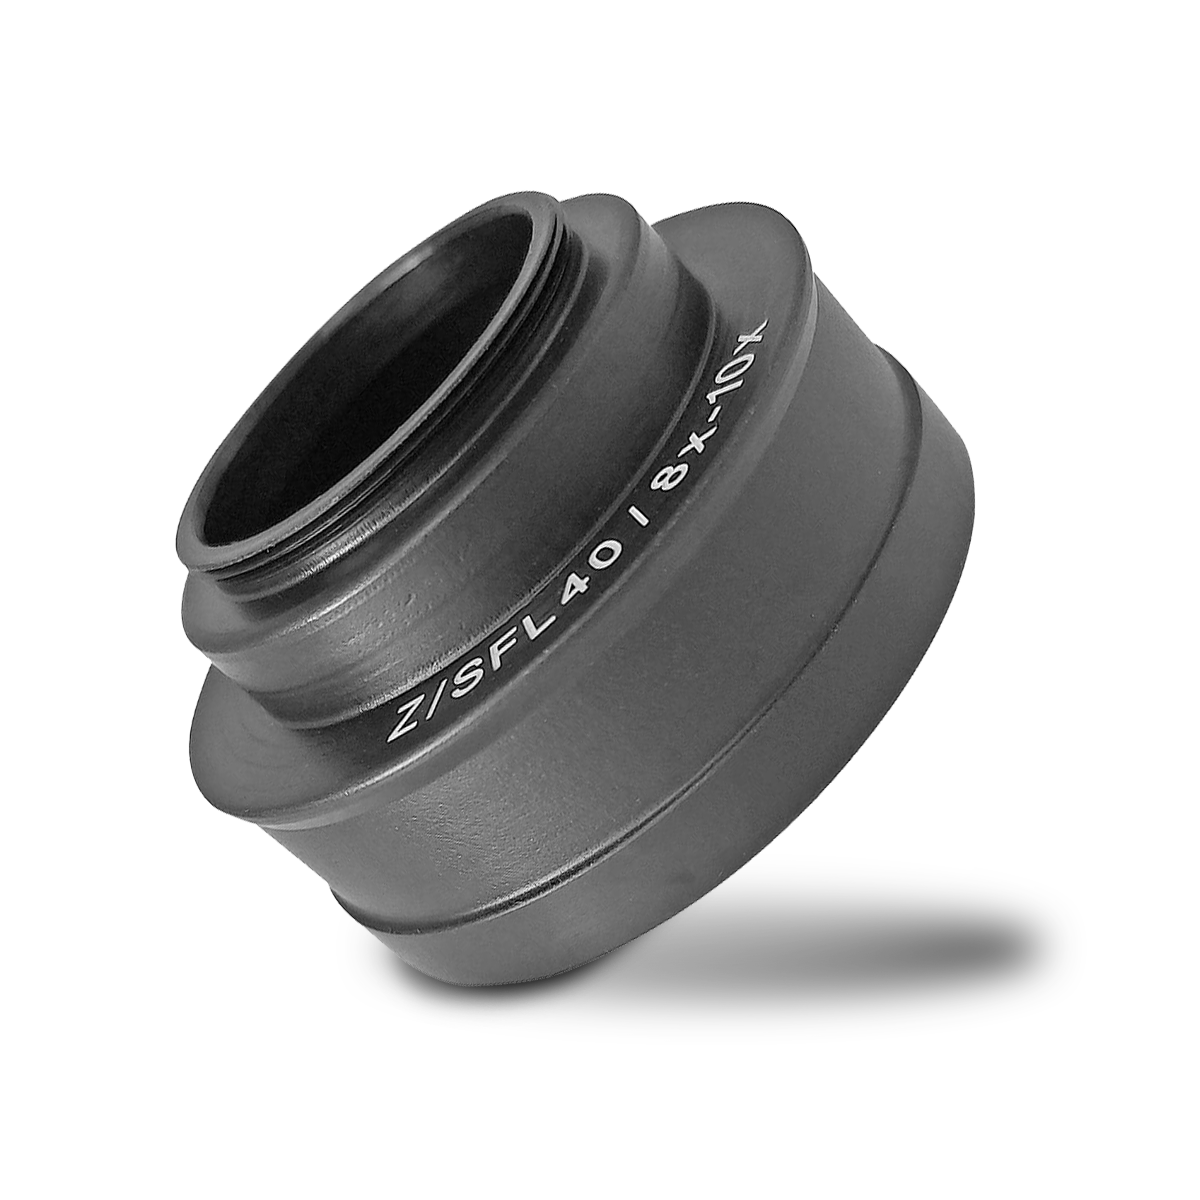 TSN-AR Z.SFL 40 Eyecup ring for Zeiss FL 40 / 8x 10x